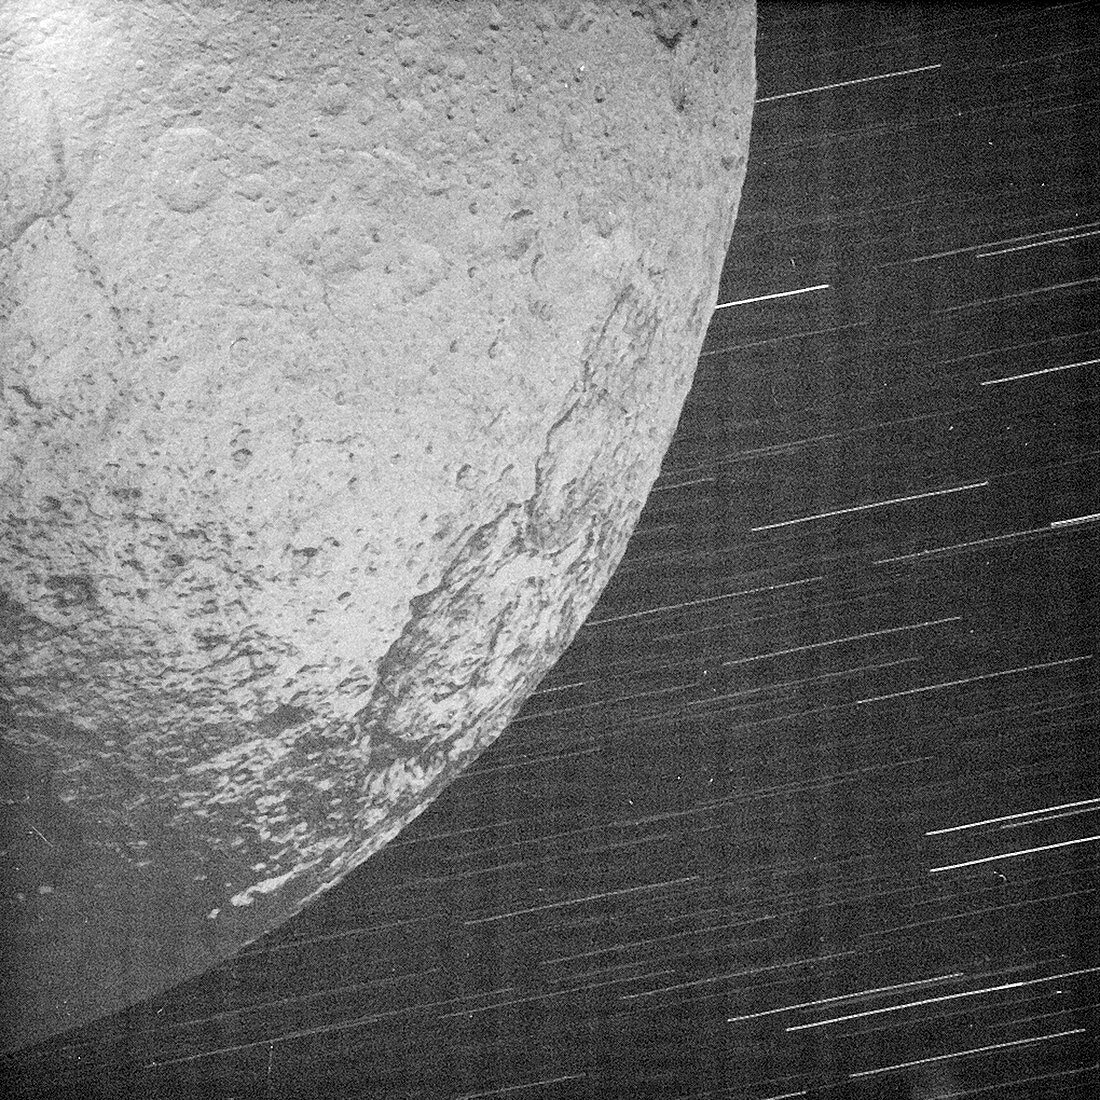 Saturn's moon Iapetus